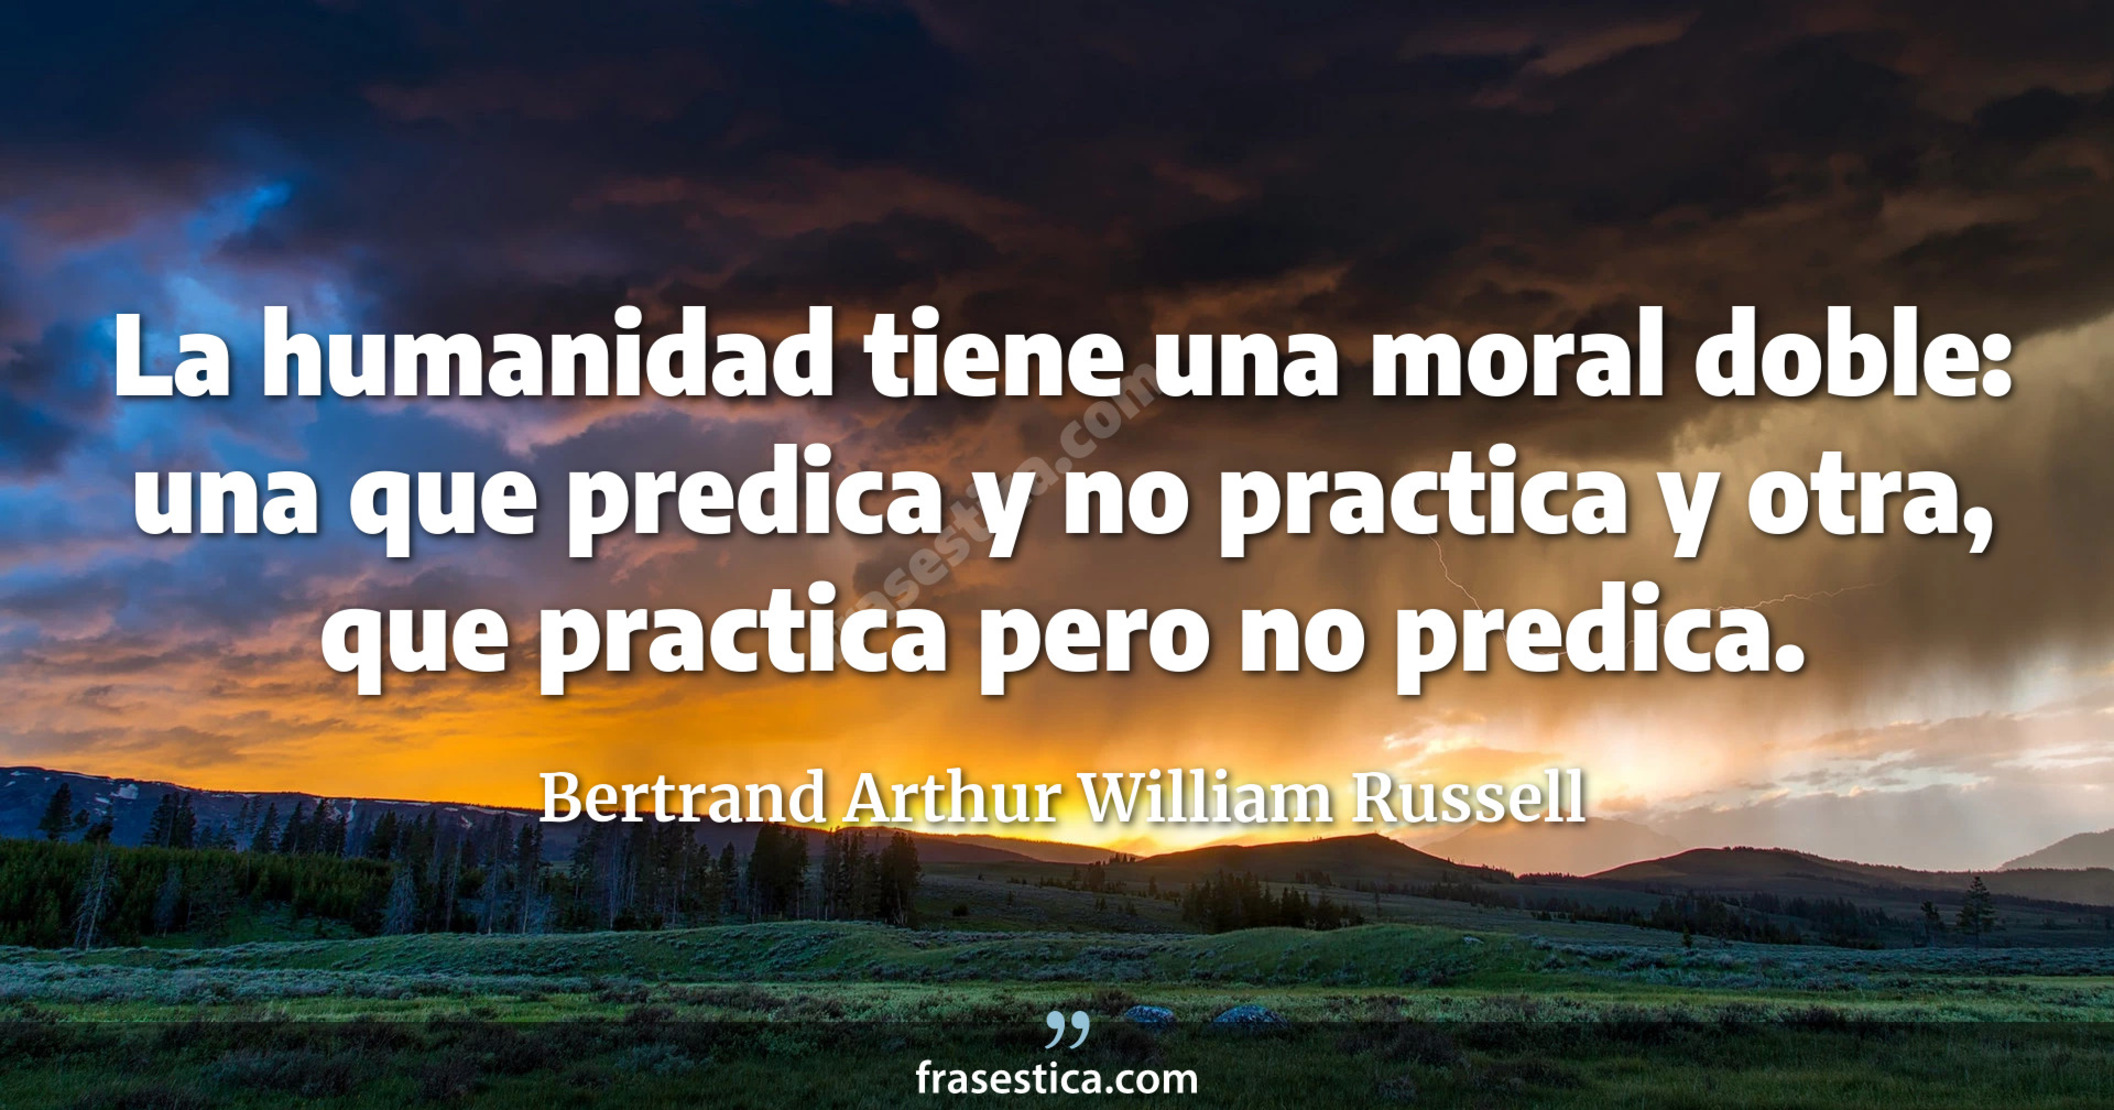 La humanidad tiene una moral doble: una que predica y no practica y otra, que practica pero no predica. - Bertrand Arthur William Russell